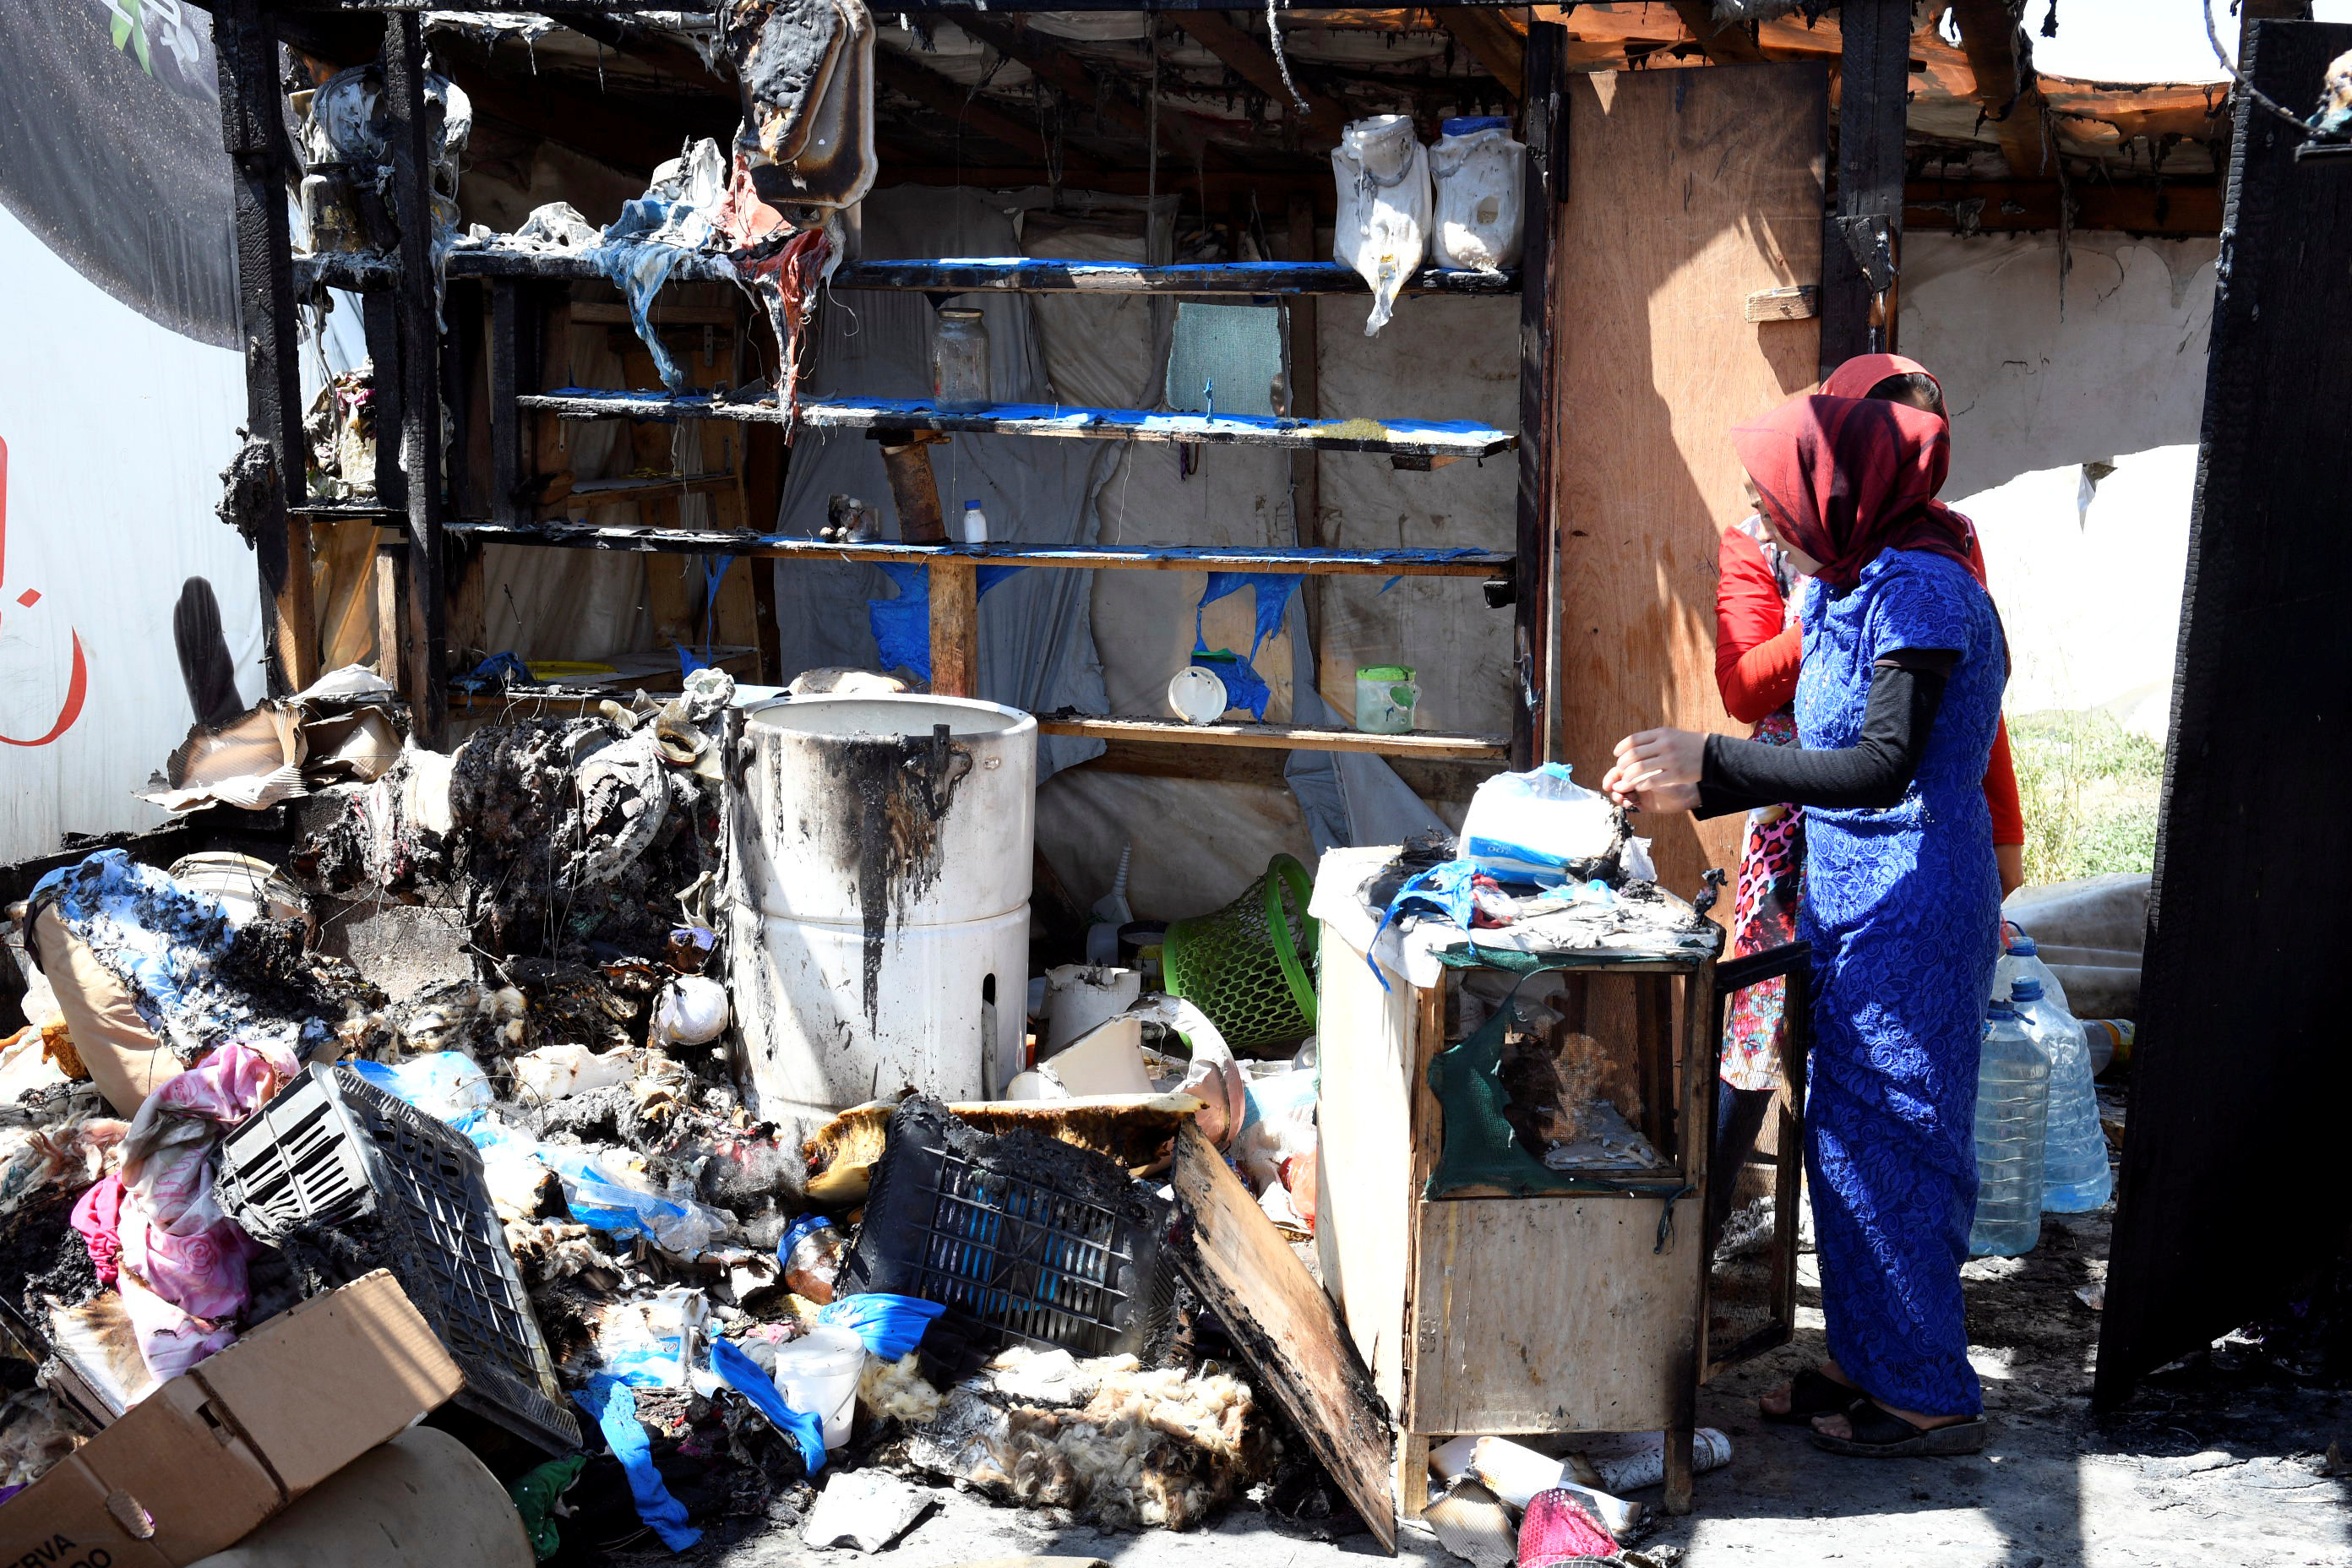 مقتنيات الأسر السورية متفحمة فى المخيم بلبنان